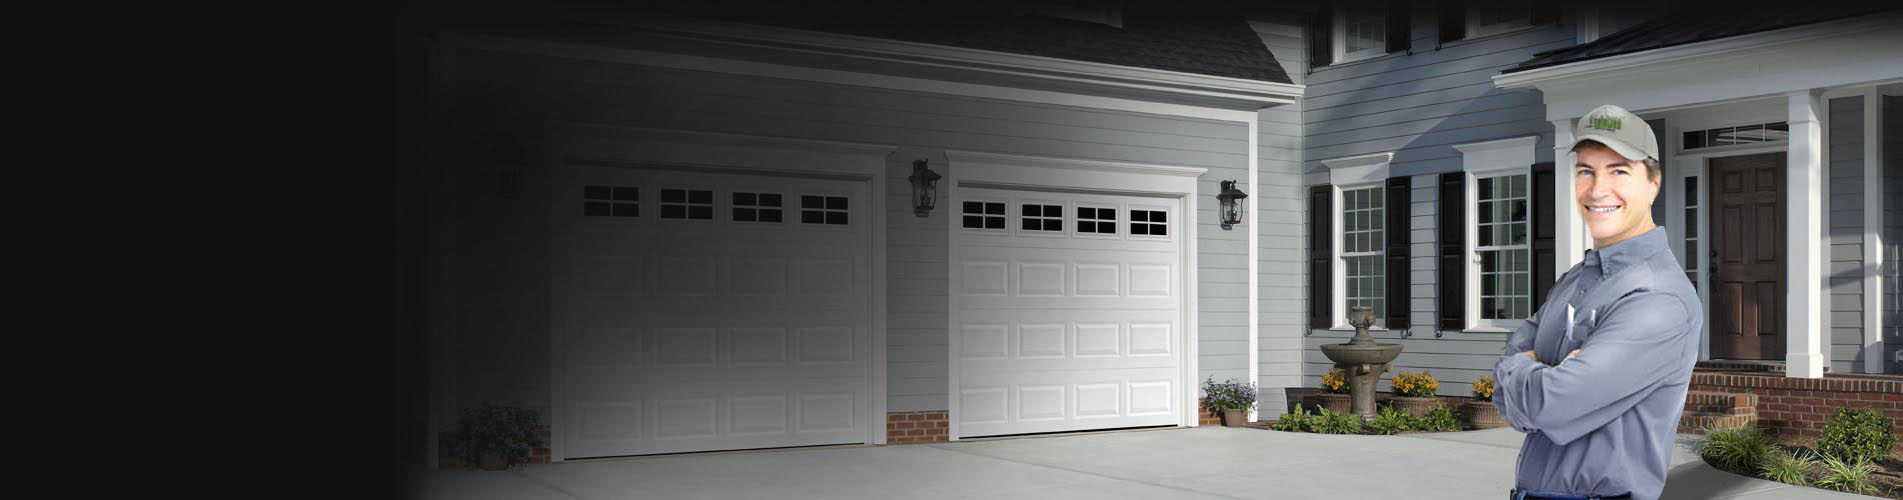 garage door weather seal